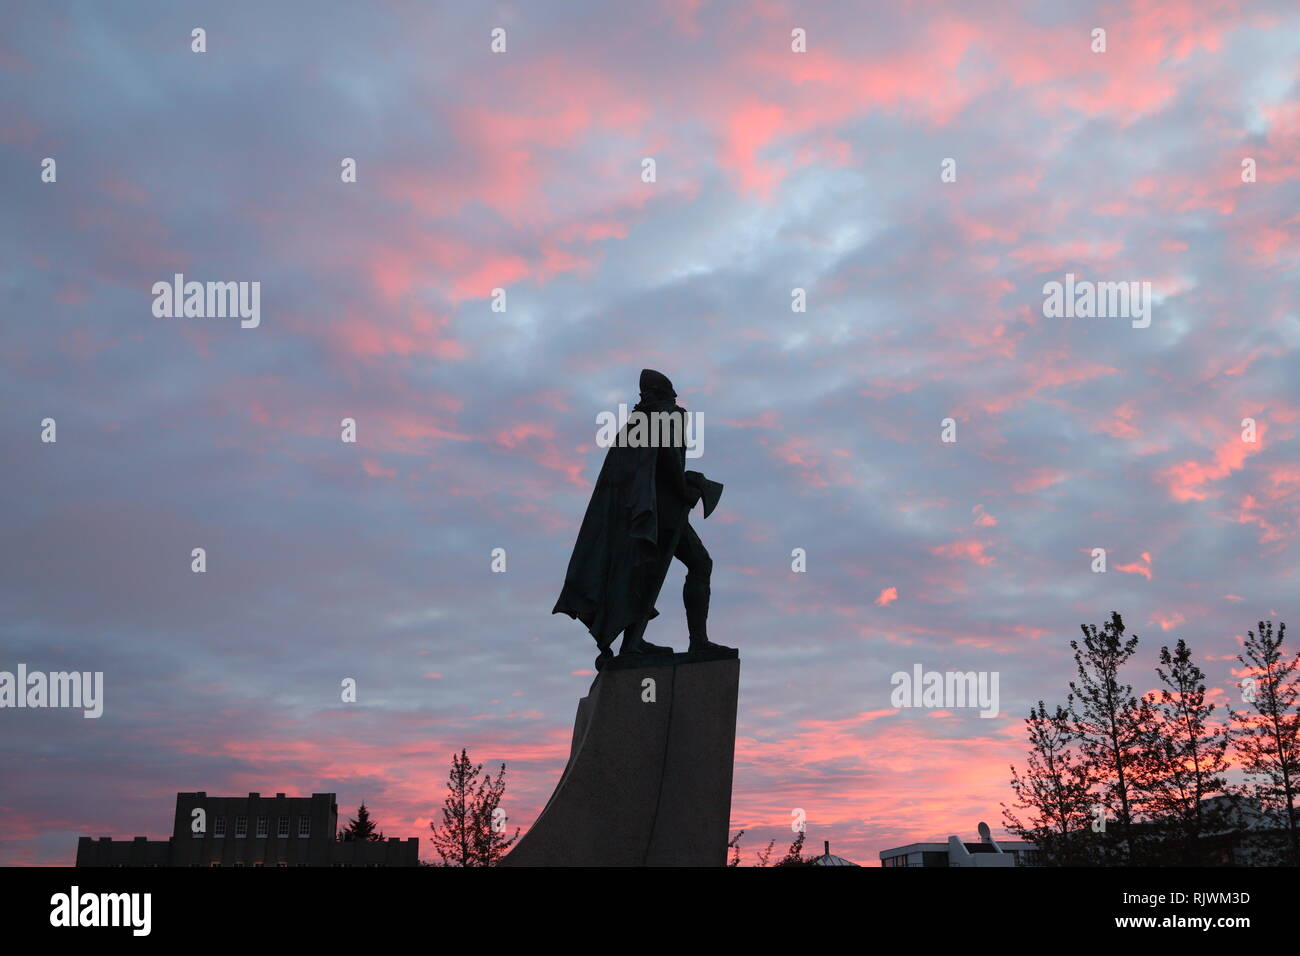 VOR der Hallgrimskirkja steht die Statue von Leif Eriksson.Hier mit der Streitaxt vor rotem abendhimmel Banque D'Images